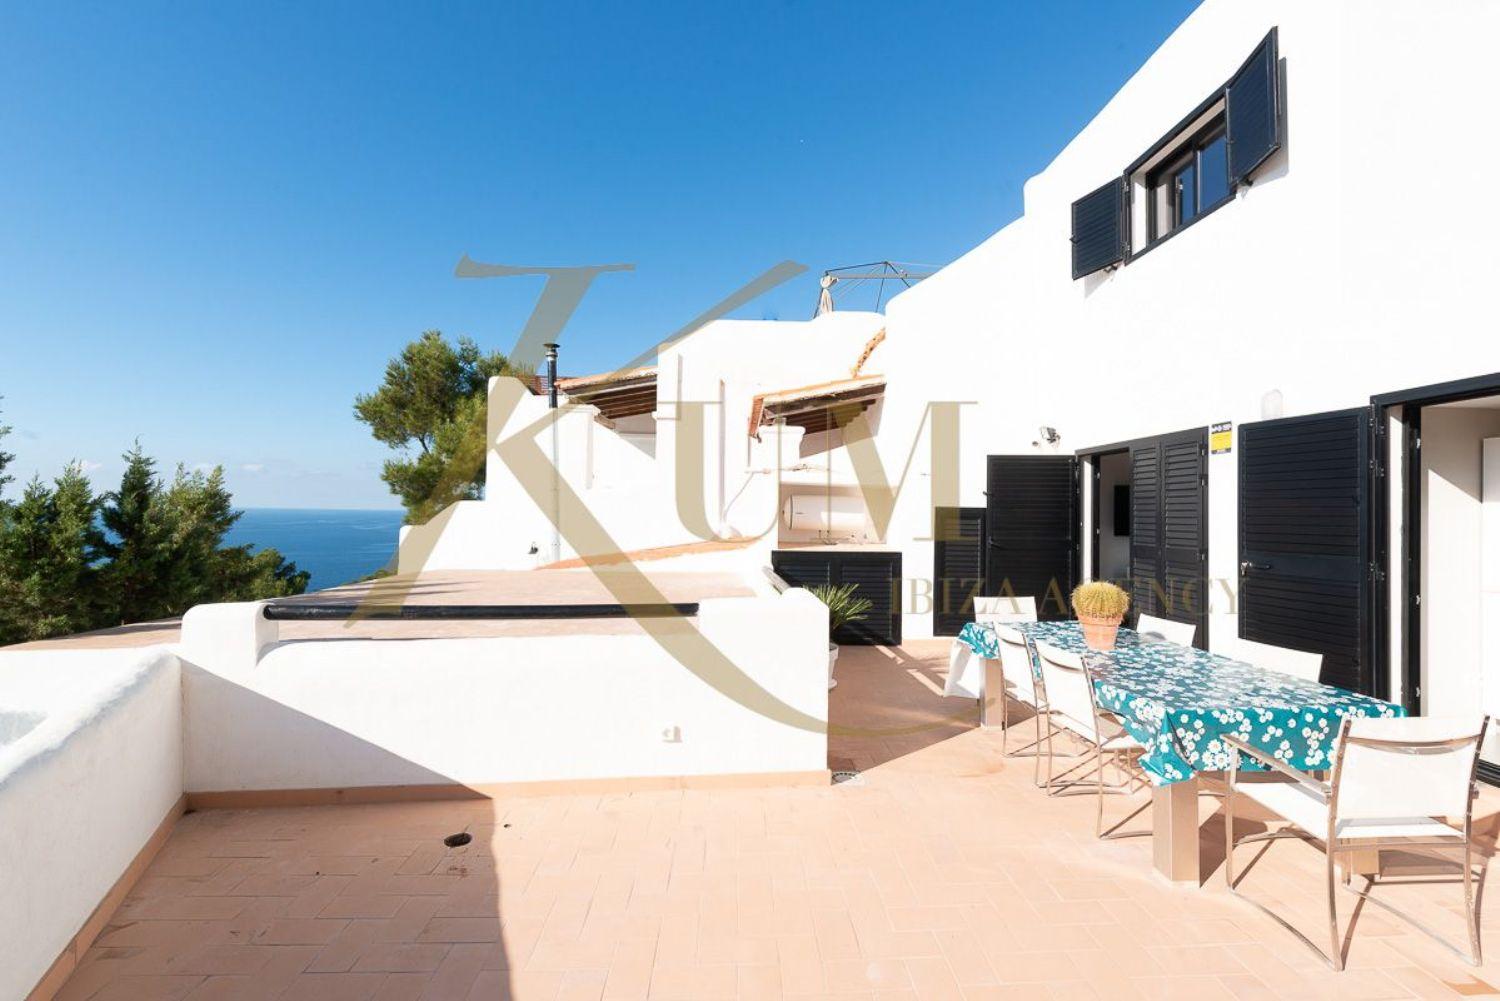 Casa de 2 plantes moblada, amb terrassa i vistes al mar.